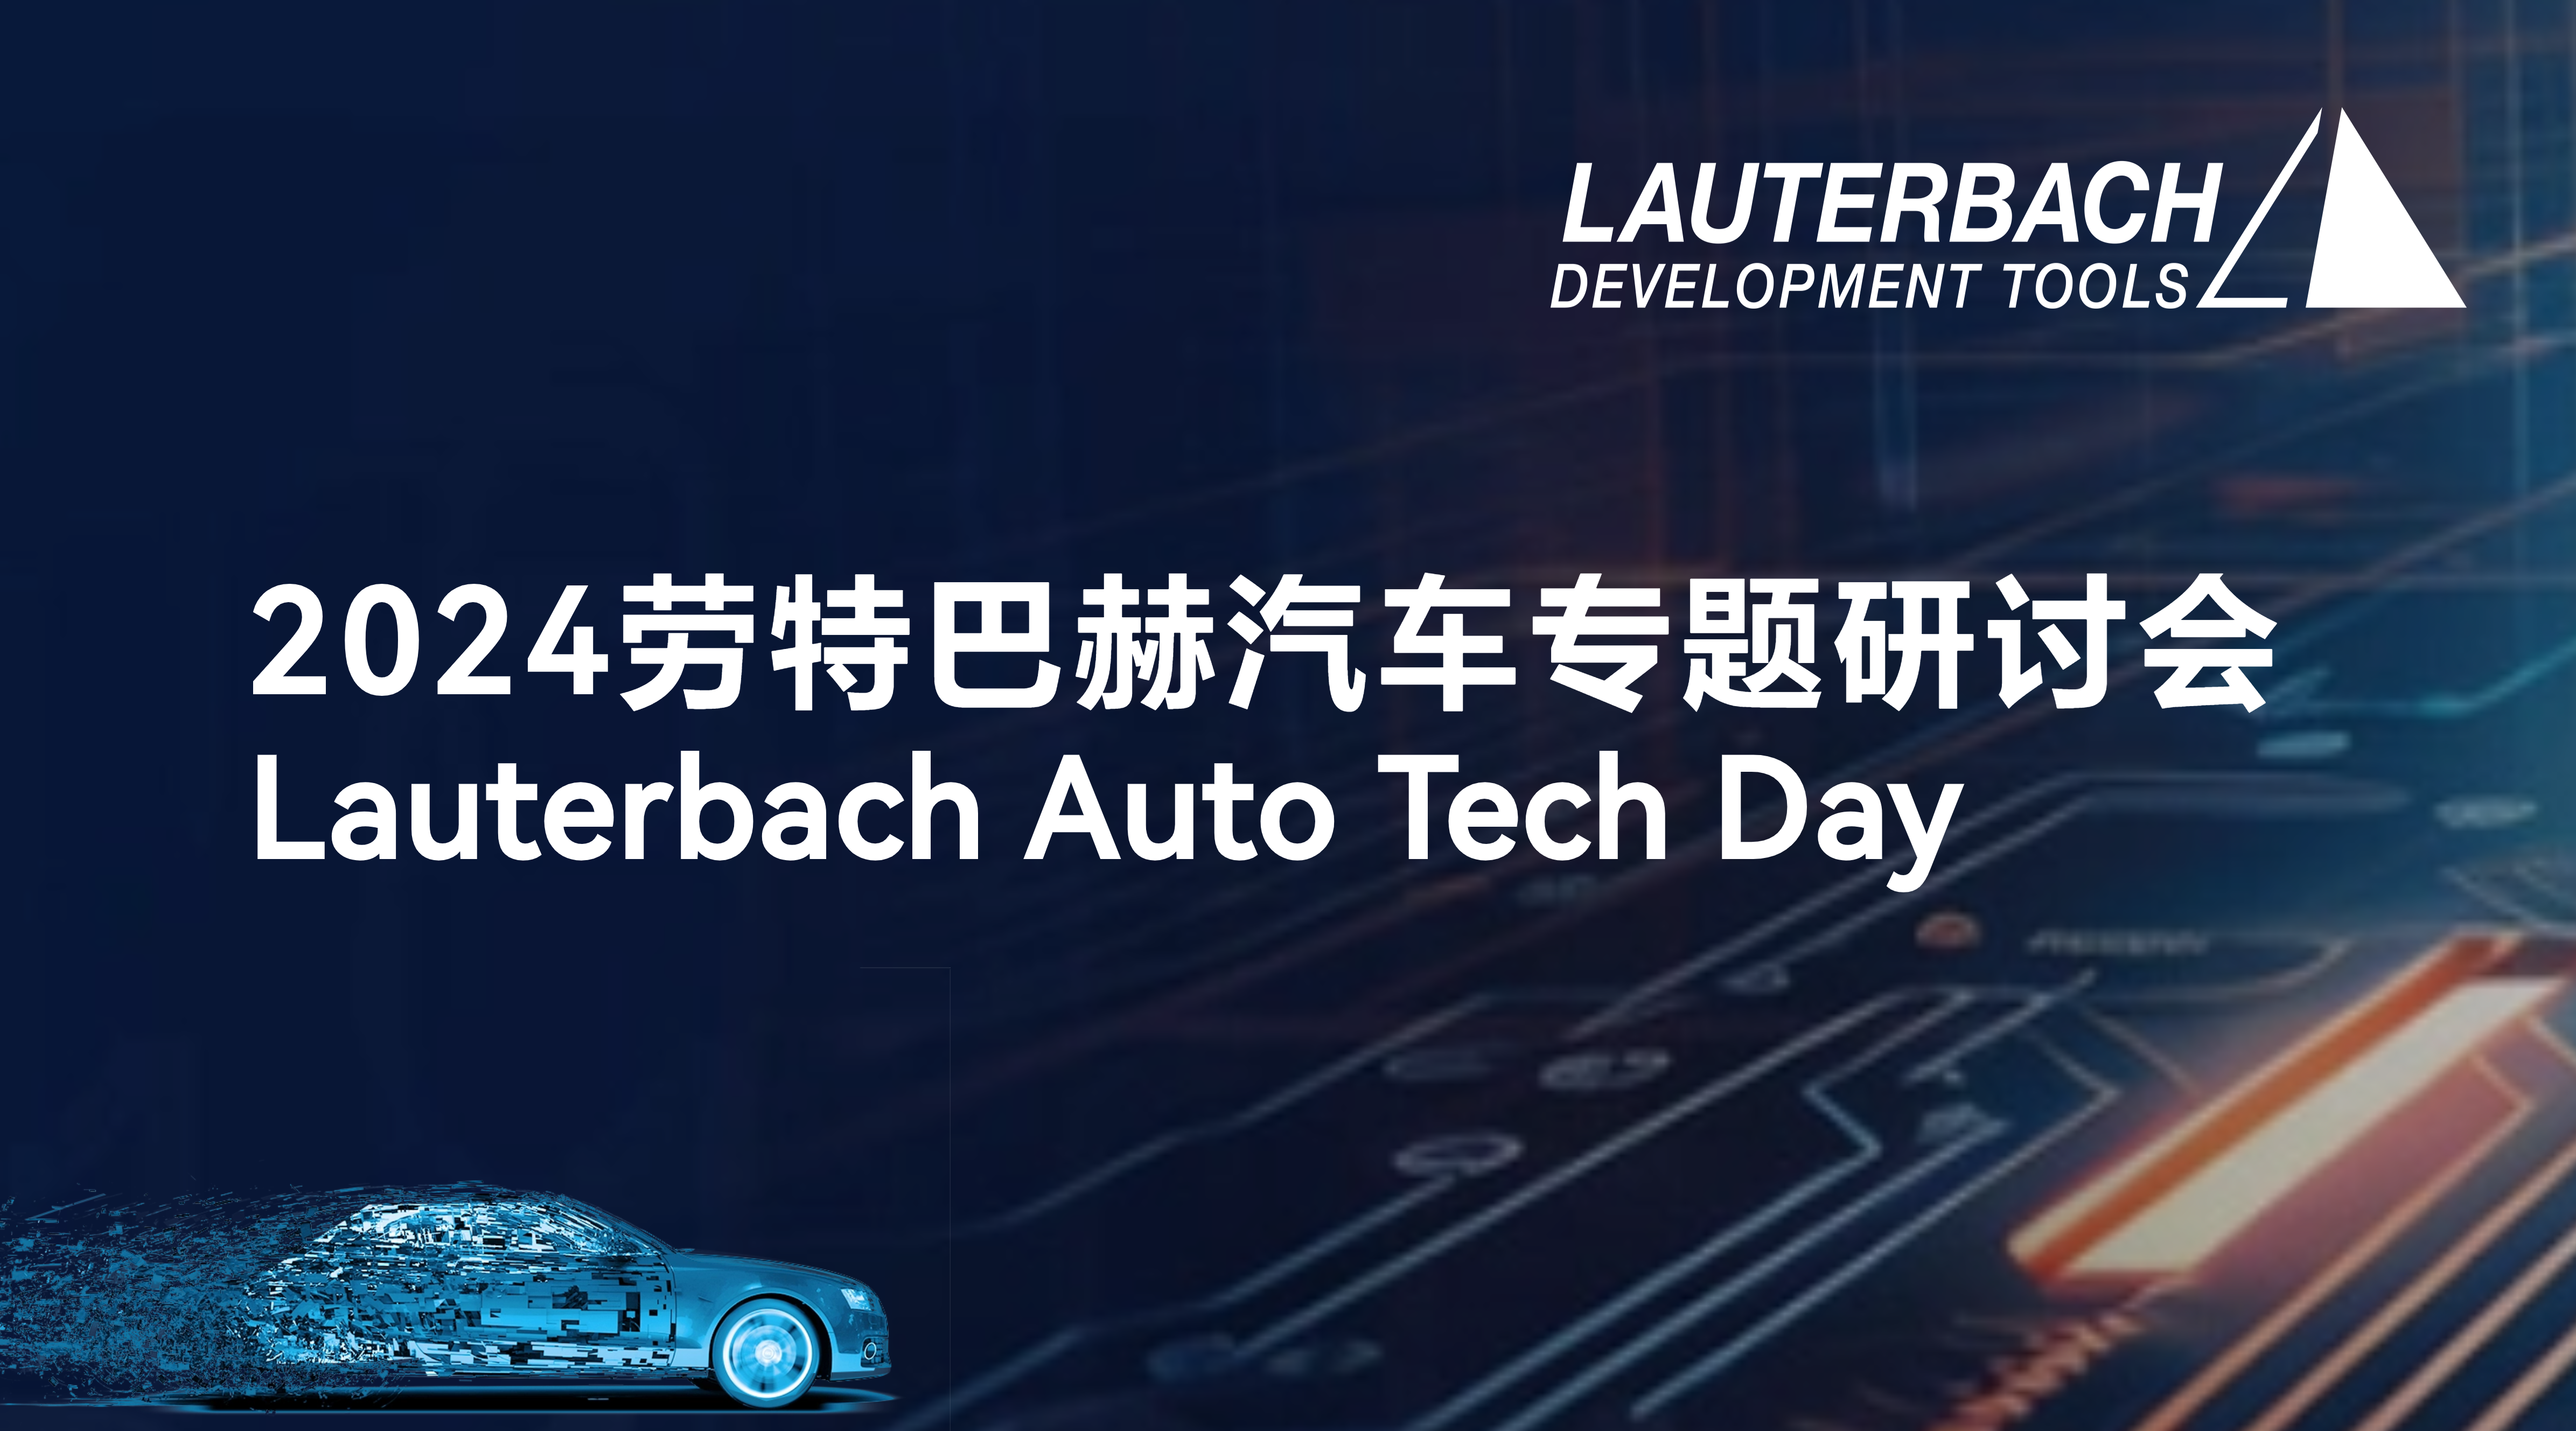 Lauterbach Auto Tech Day